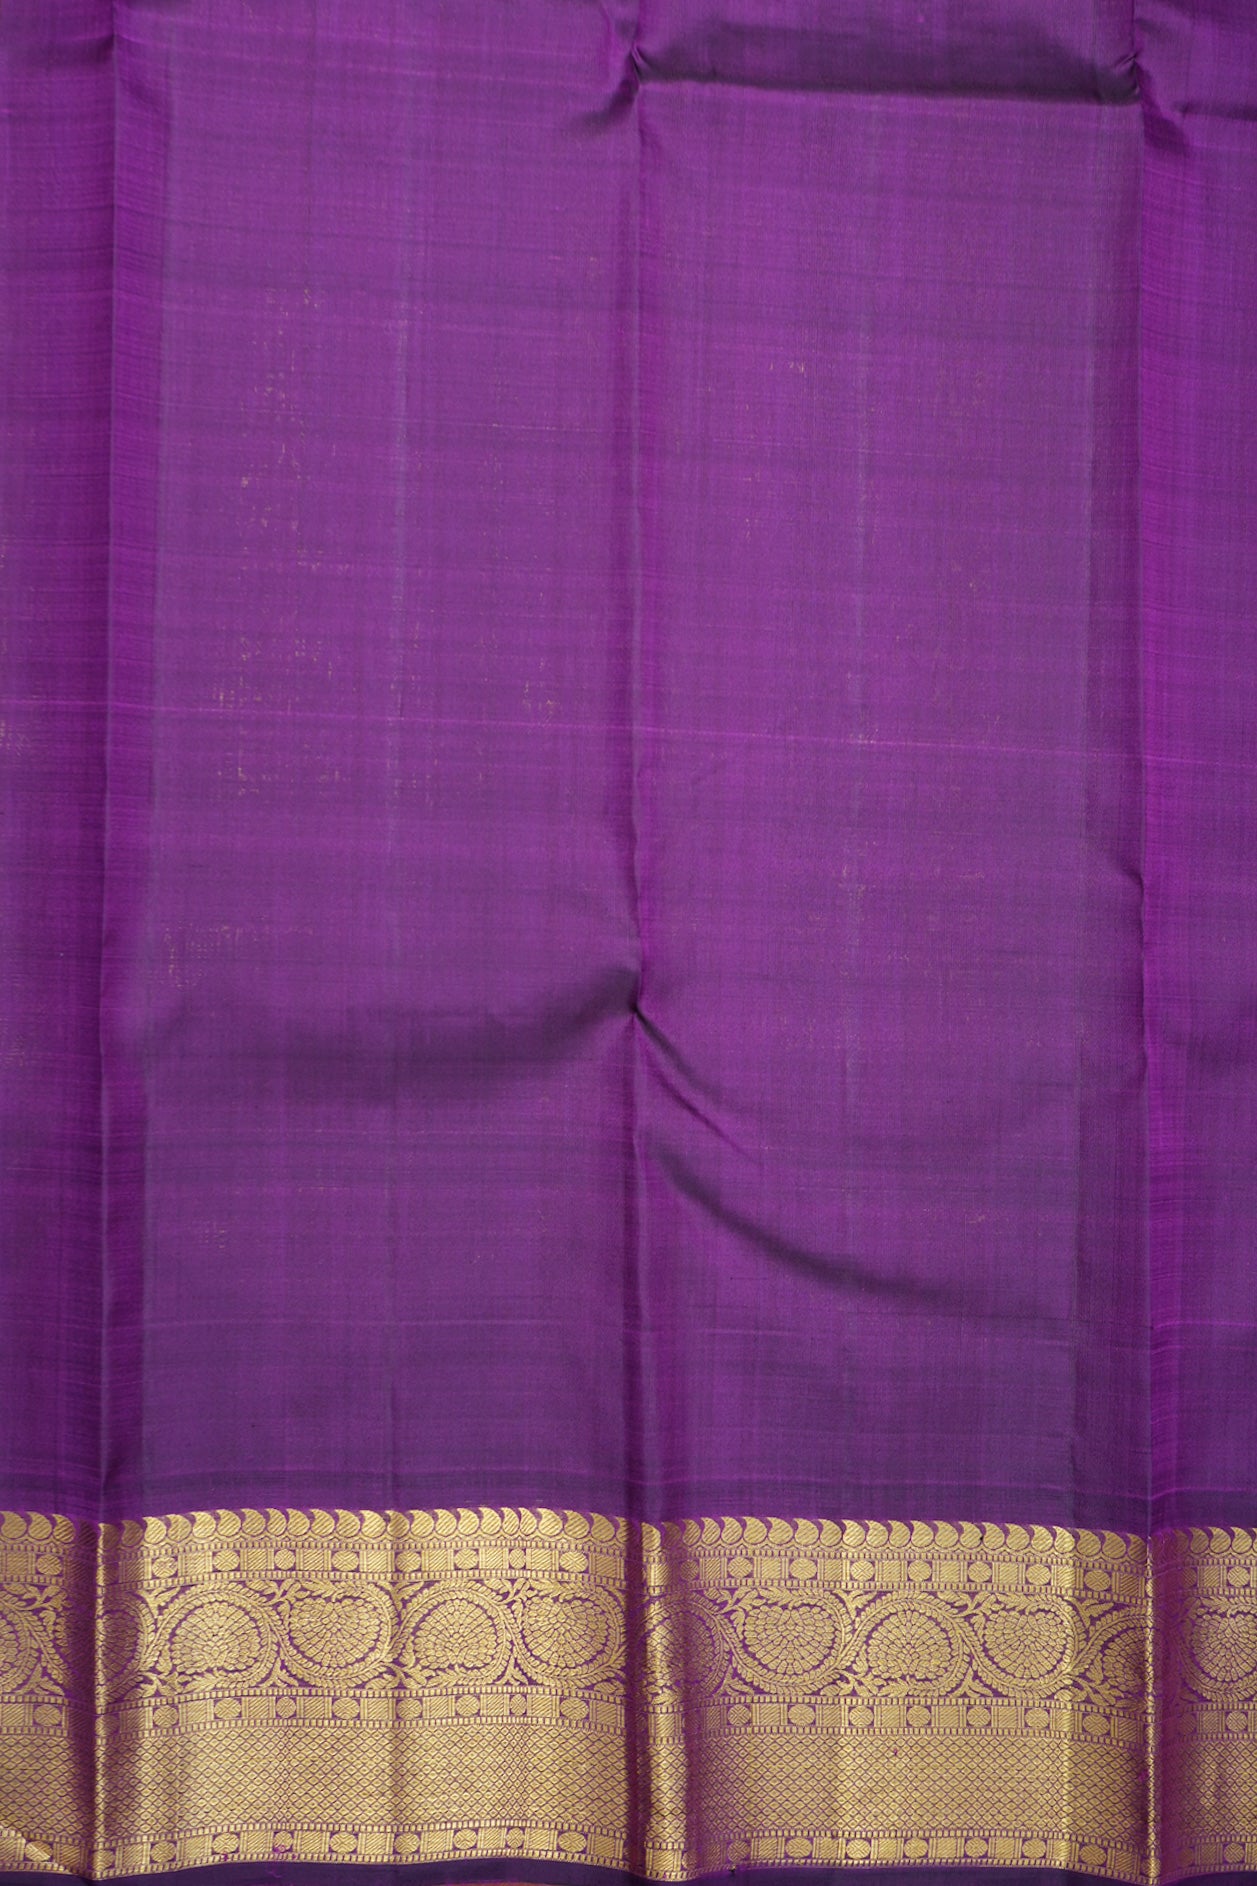 Iruthalai Pakshi Zari Motifs Mango Yellow Kanchipuram Silk Saree